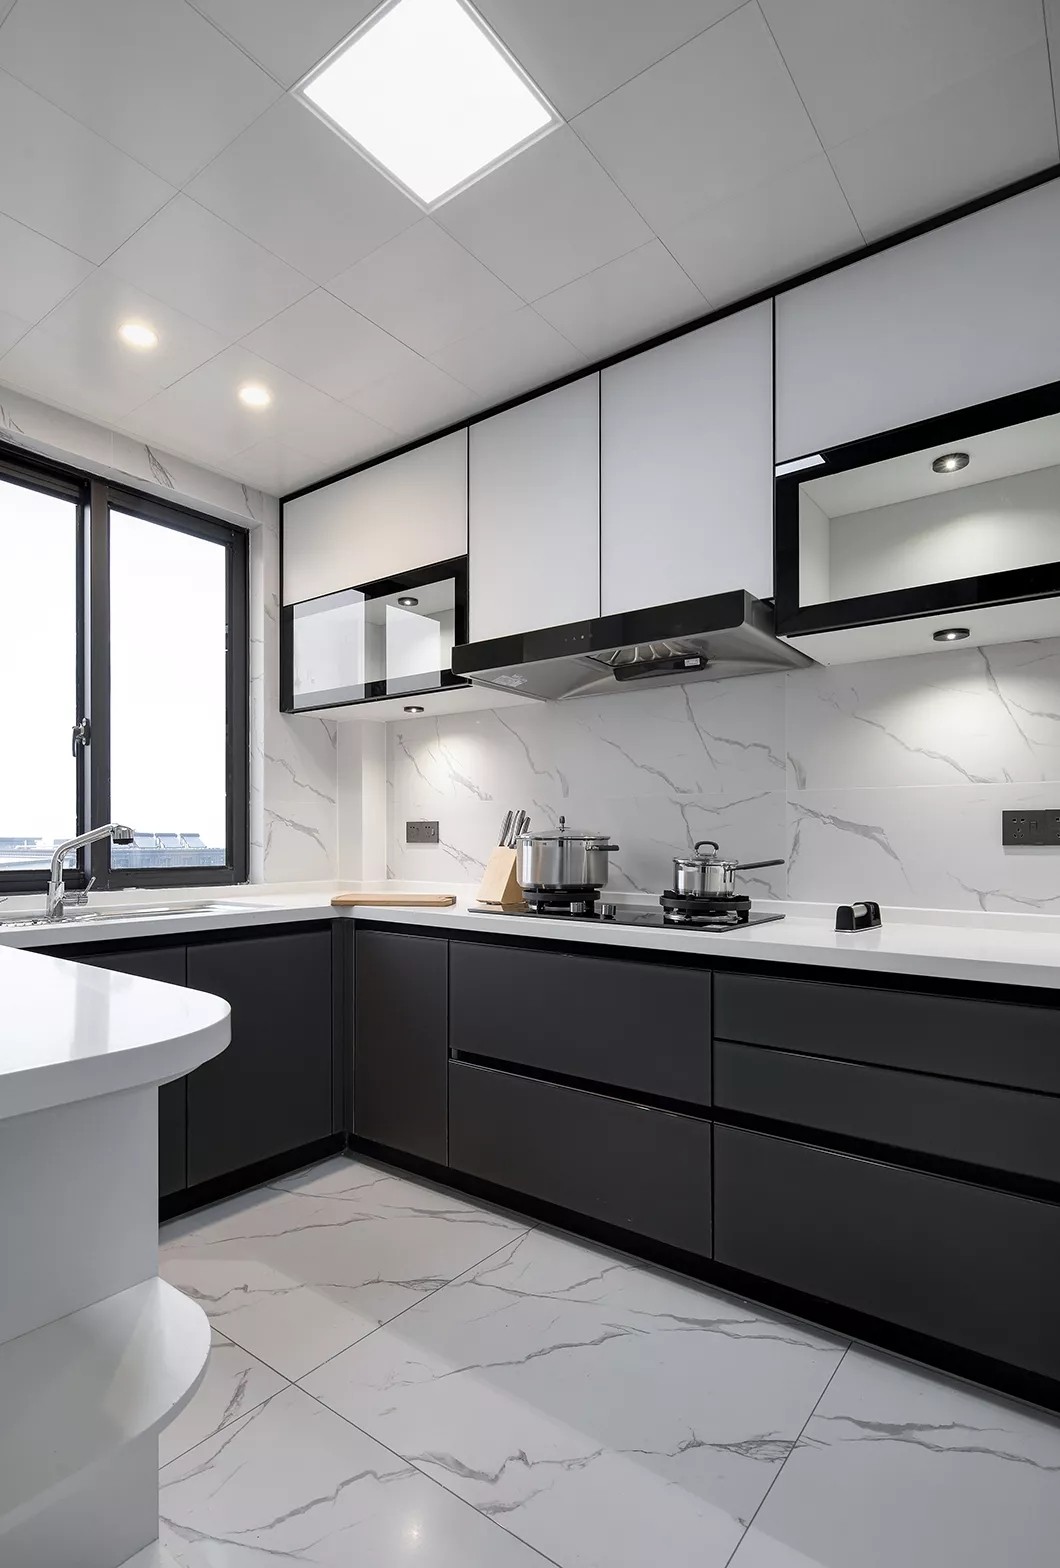 厨房在雅白的墙地面砖的空间基础,搭配深灰色的定制橱柜,还有白色的